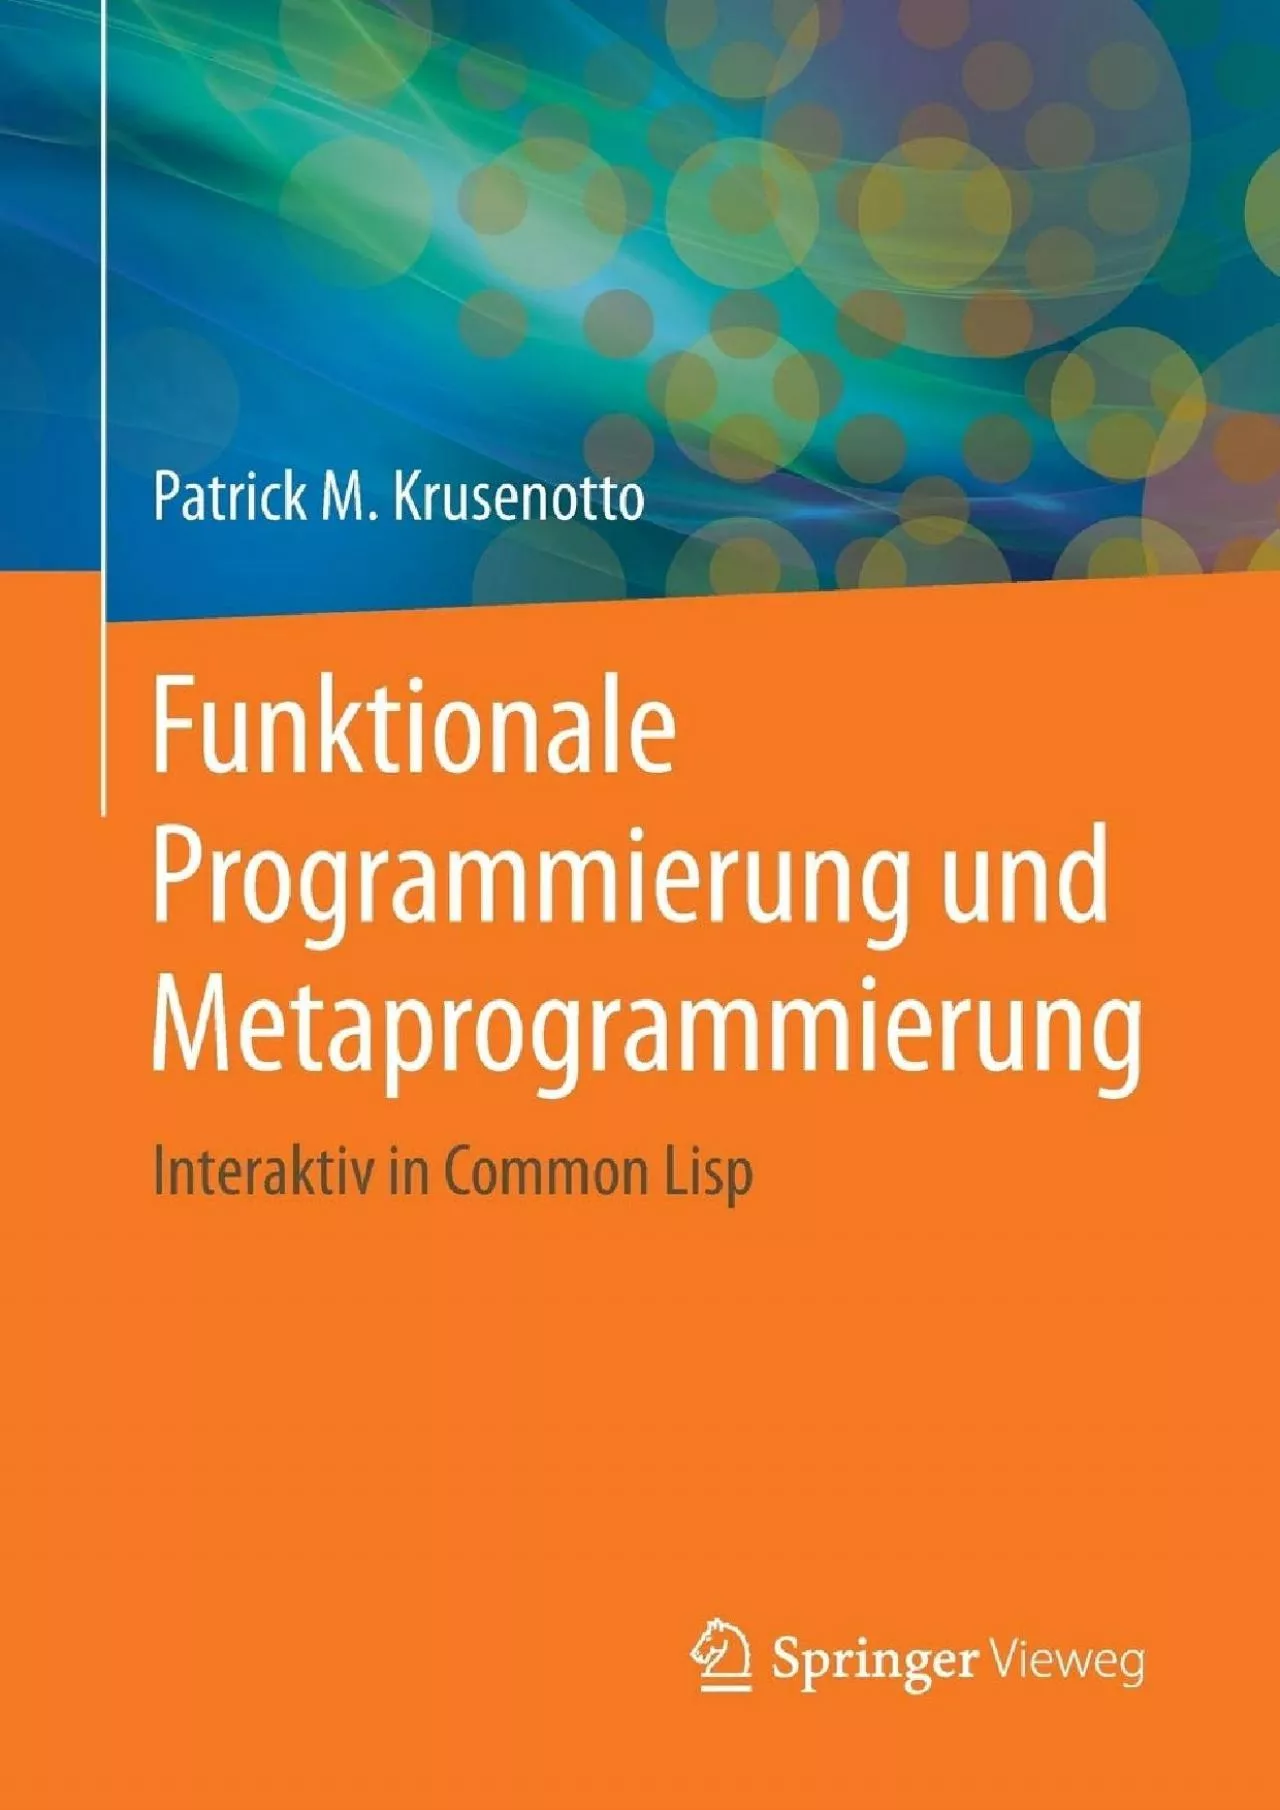 [PDF]-Funktionale Programmierung und Metaprogrammierung: Interaktiv in Common Lisp (German